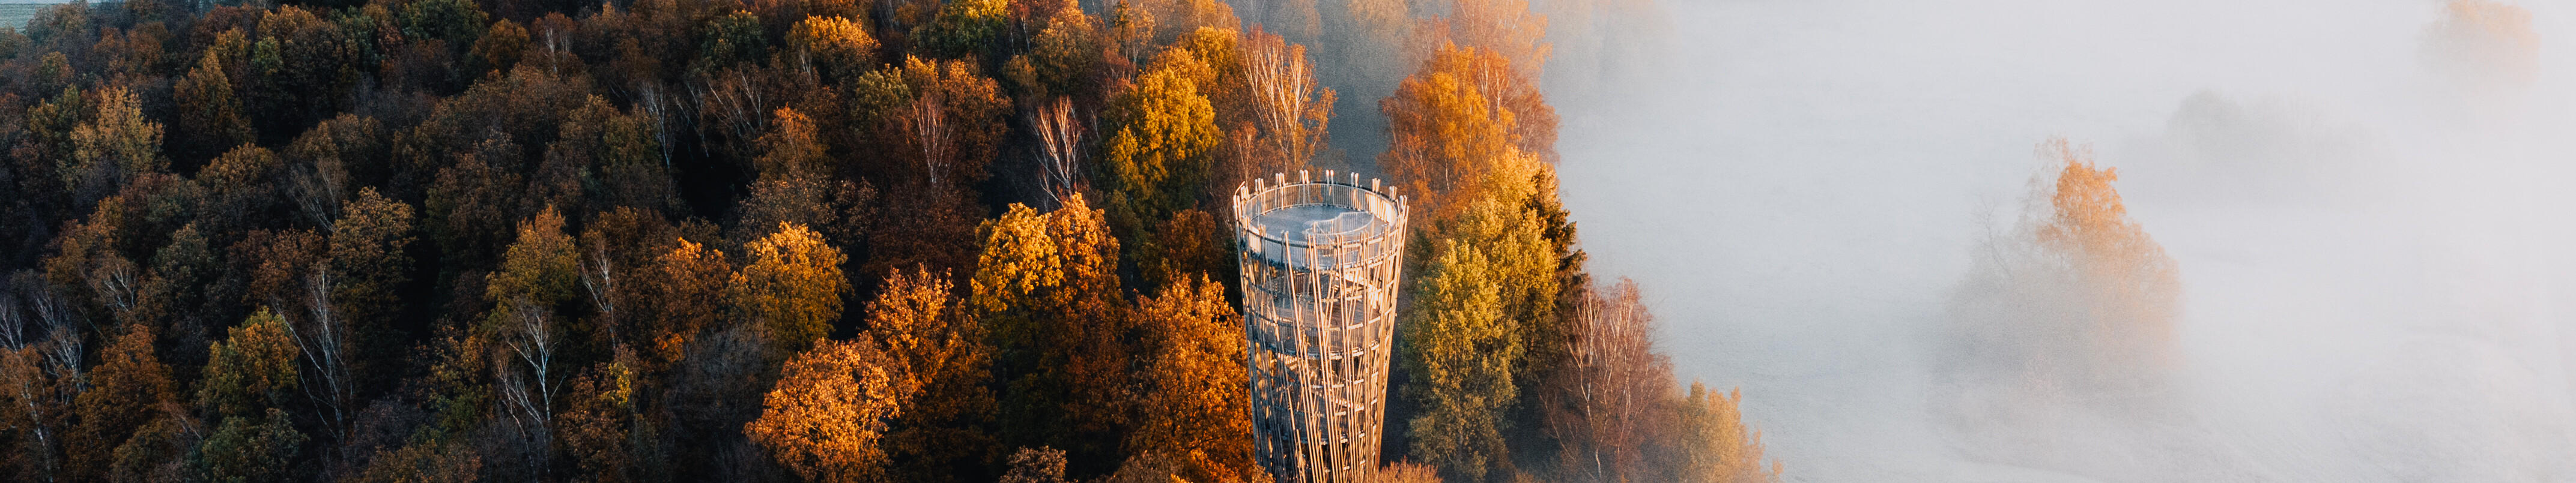 Herbststimmung am Jübergturm im Sauerland © Lennart Pagel